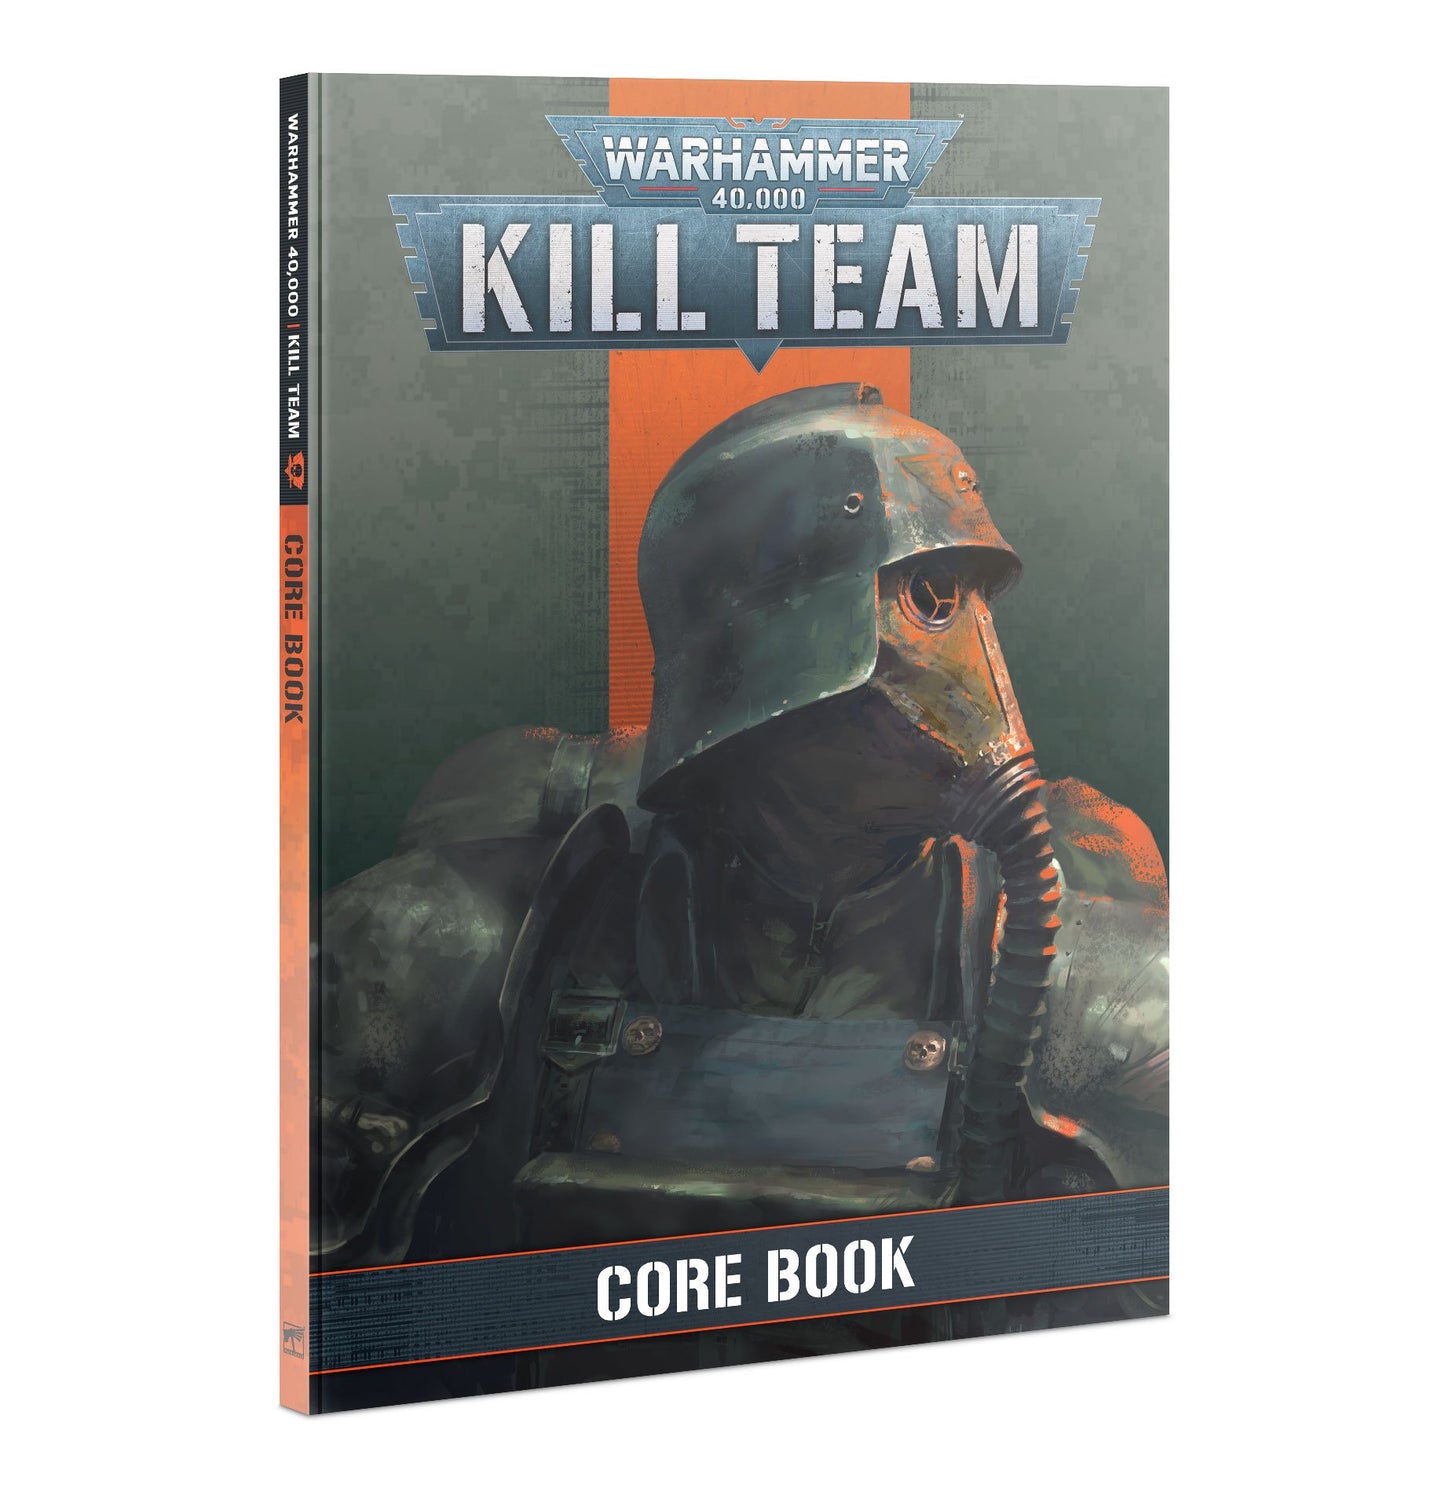 Warhammer 40,000: Libro básico de Kill Team